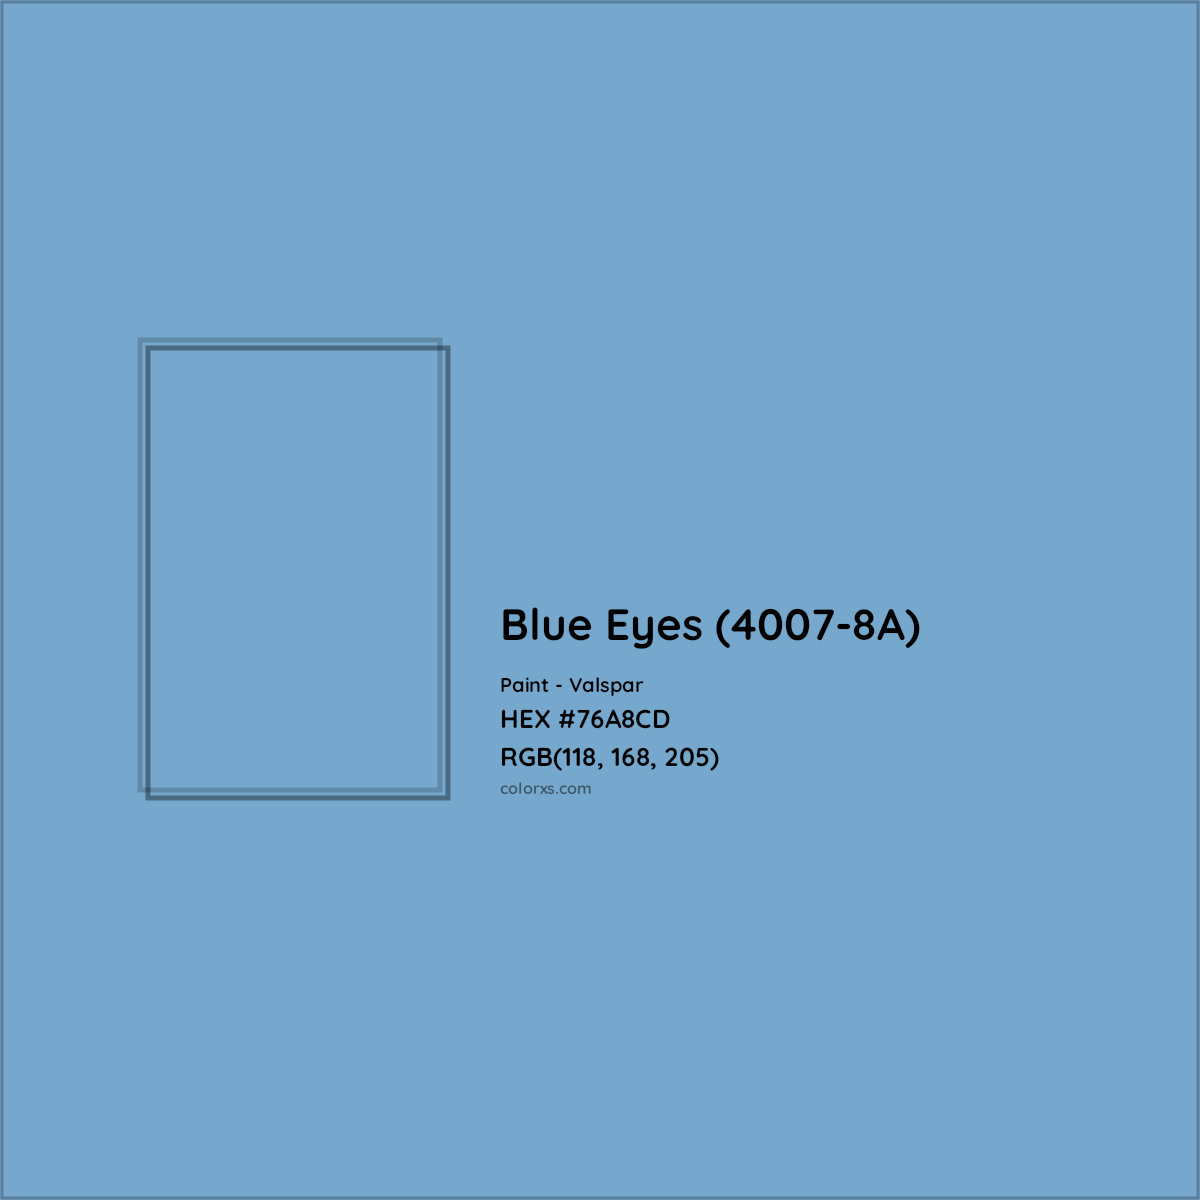 HEX #76A8CD Blue Eyes (4007-8A) Paint Valspar - Color Code